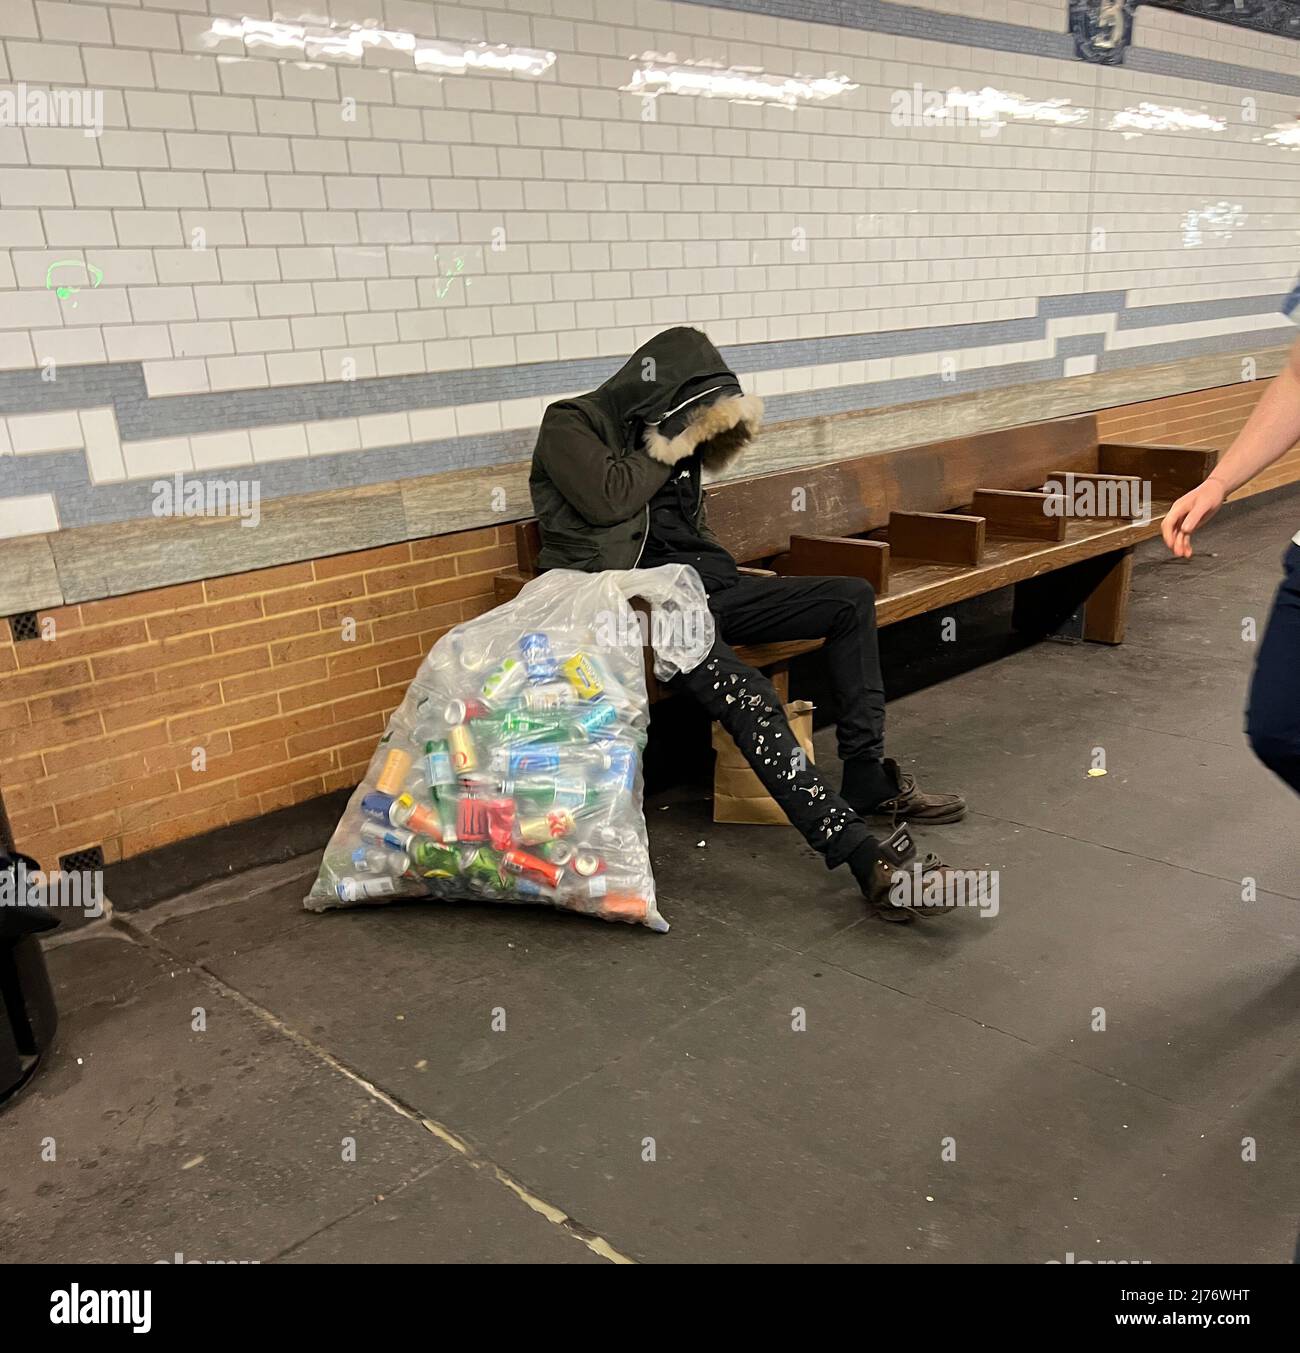 Der Mann schläft auf einer Bank auf einer U-Bahn-Plattform in Manhattan mit einer vollen Tüte Aluminiumdosen, die er gesammelt hat, um ein paar Dollar aufzukratzen. Manhattan, New York City. Stockfoto